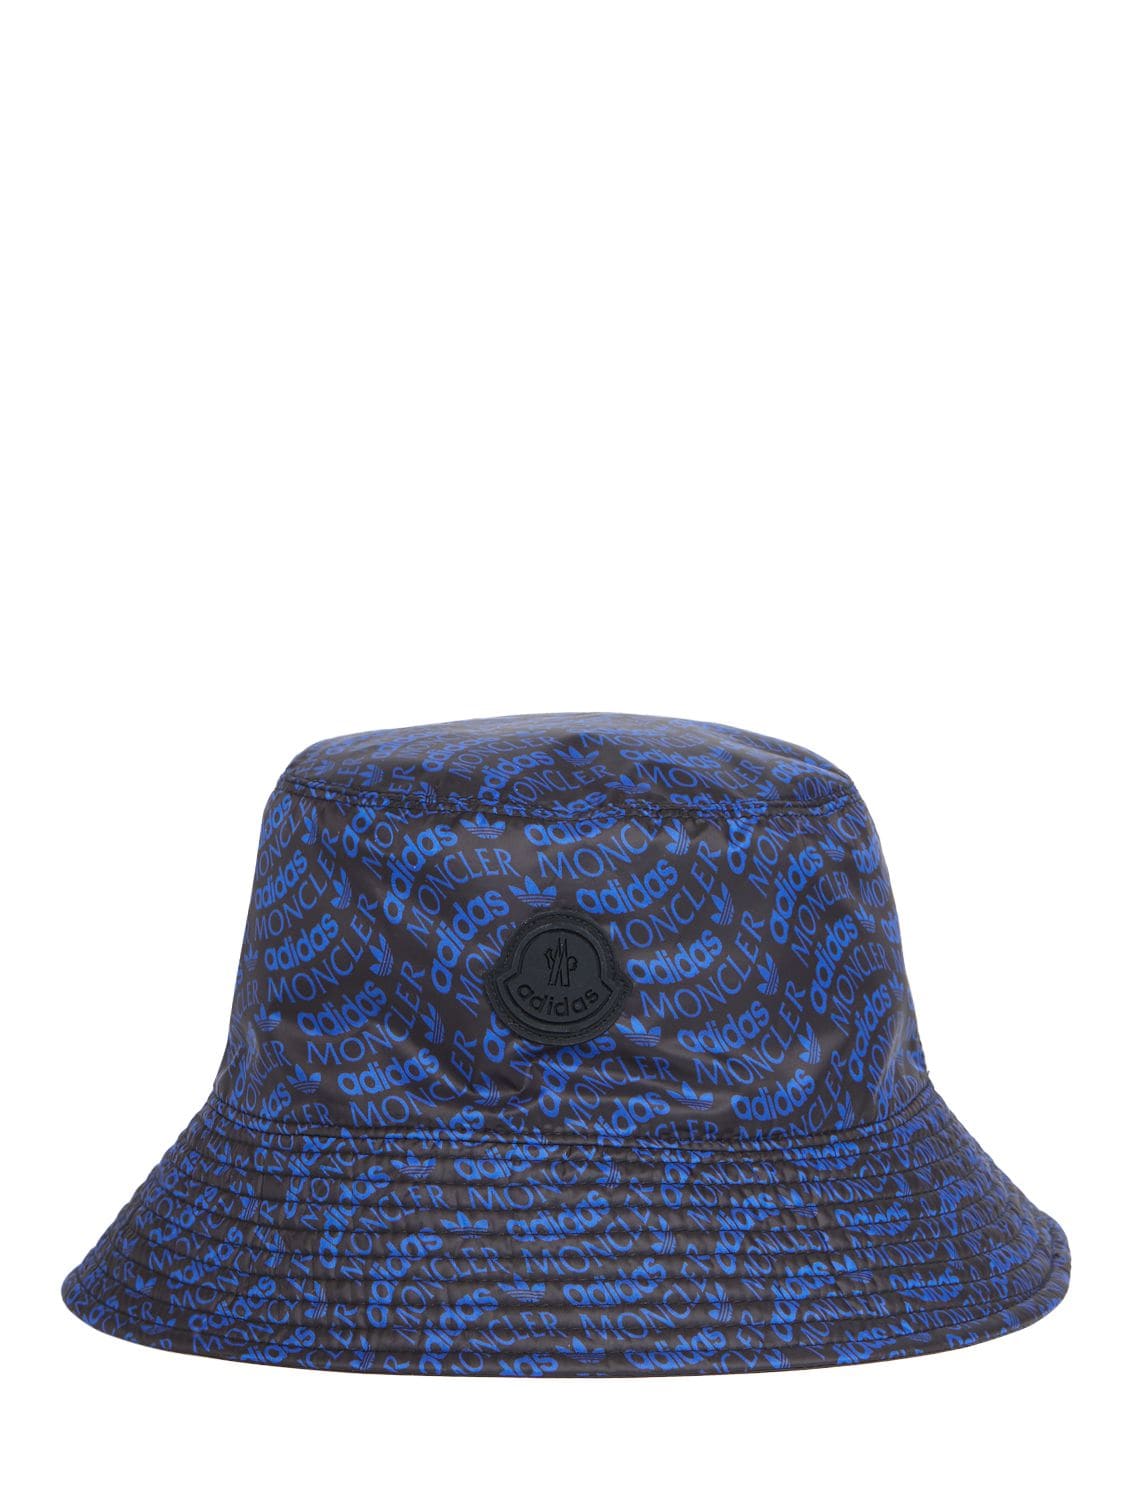 Moncler X Adidas Tech Bucket Hat – WOMEN > ACCESSORIES > HATS